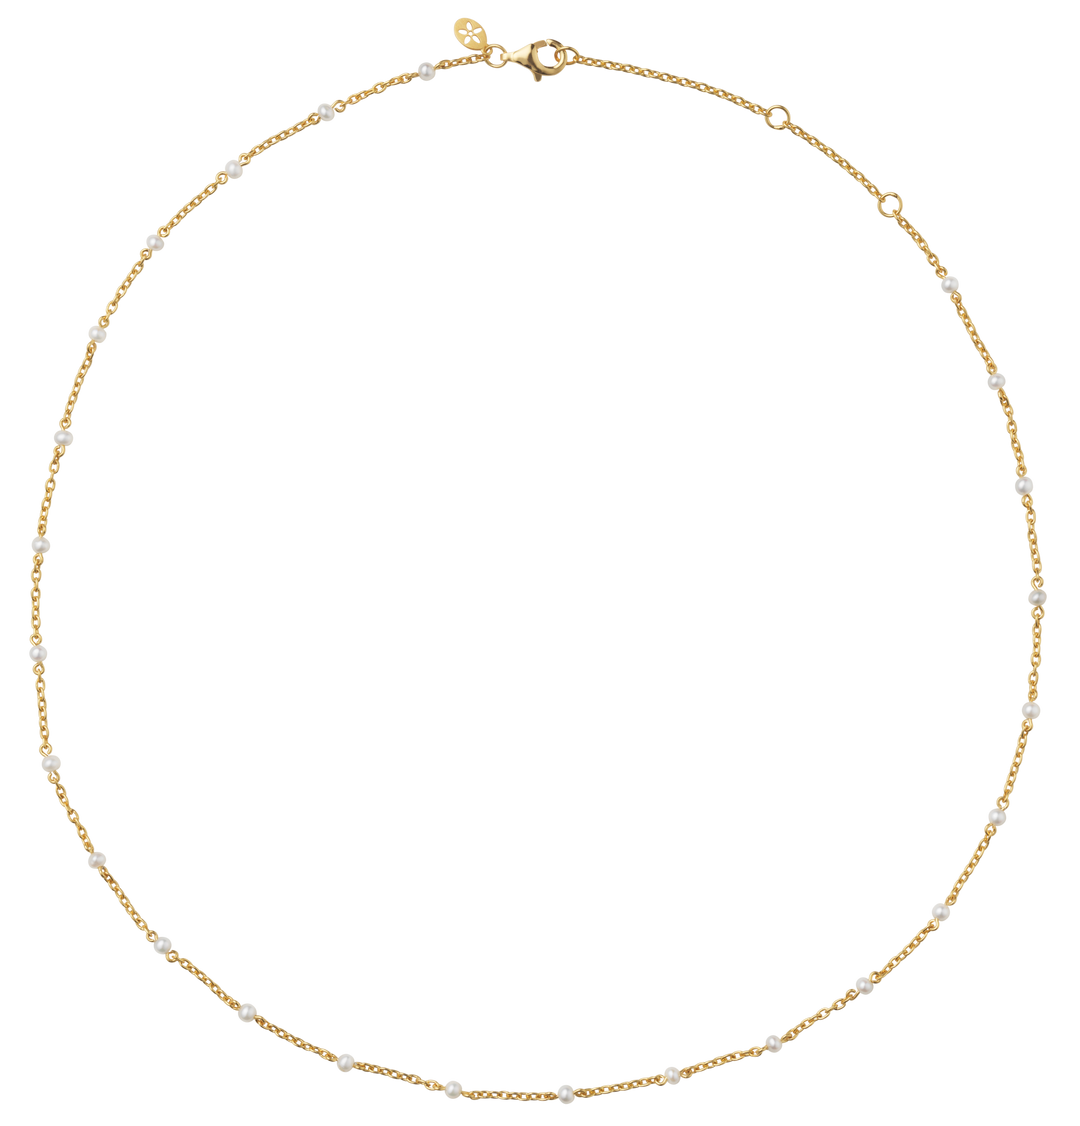 byBiehl - Guldbelagt scarlet halskæde med perler - 3-3401wp-gp